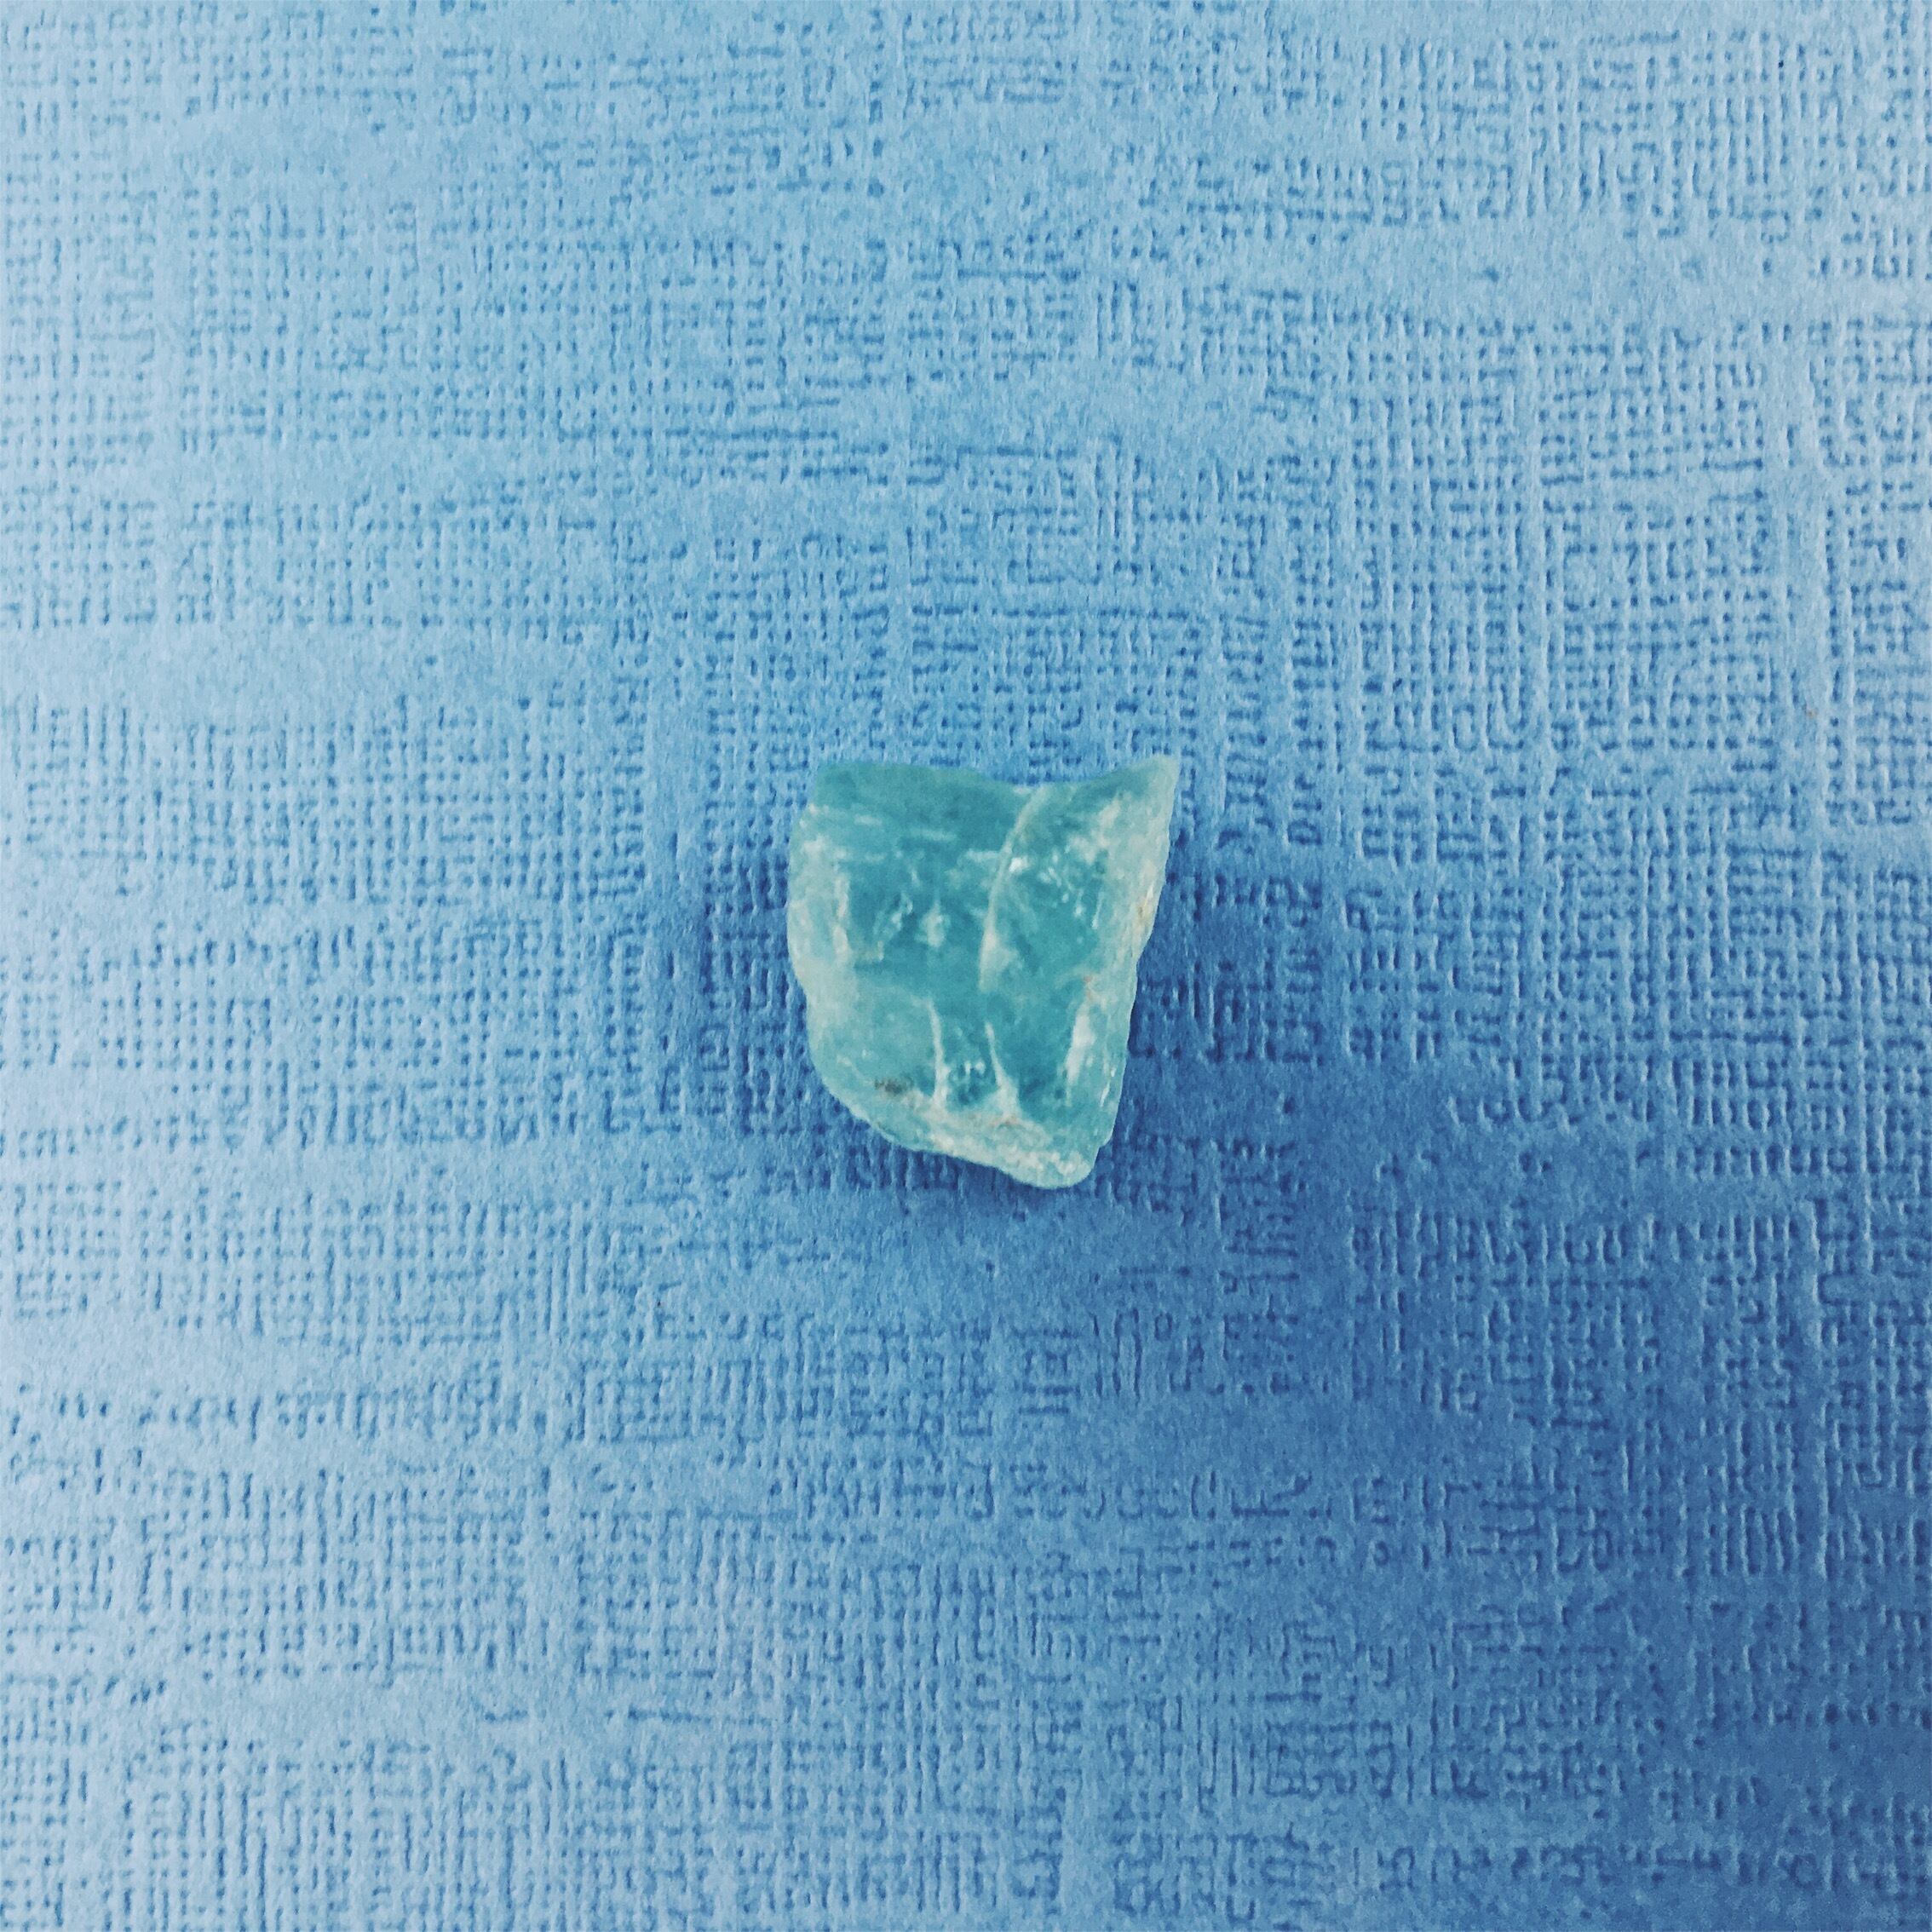 Aquamarine 〜潤〜 gemstone